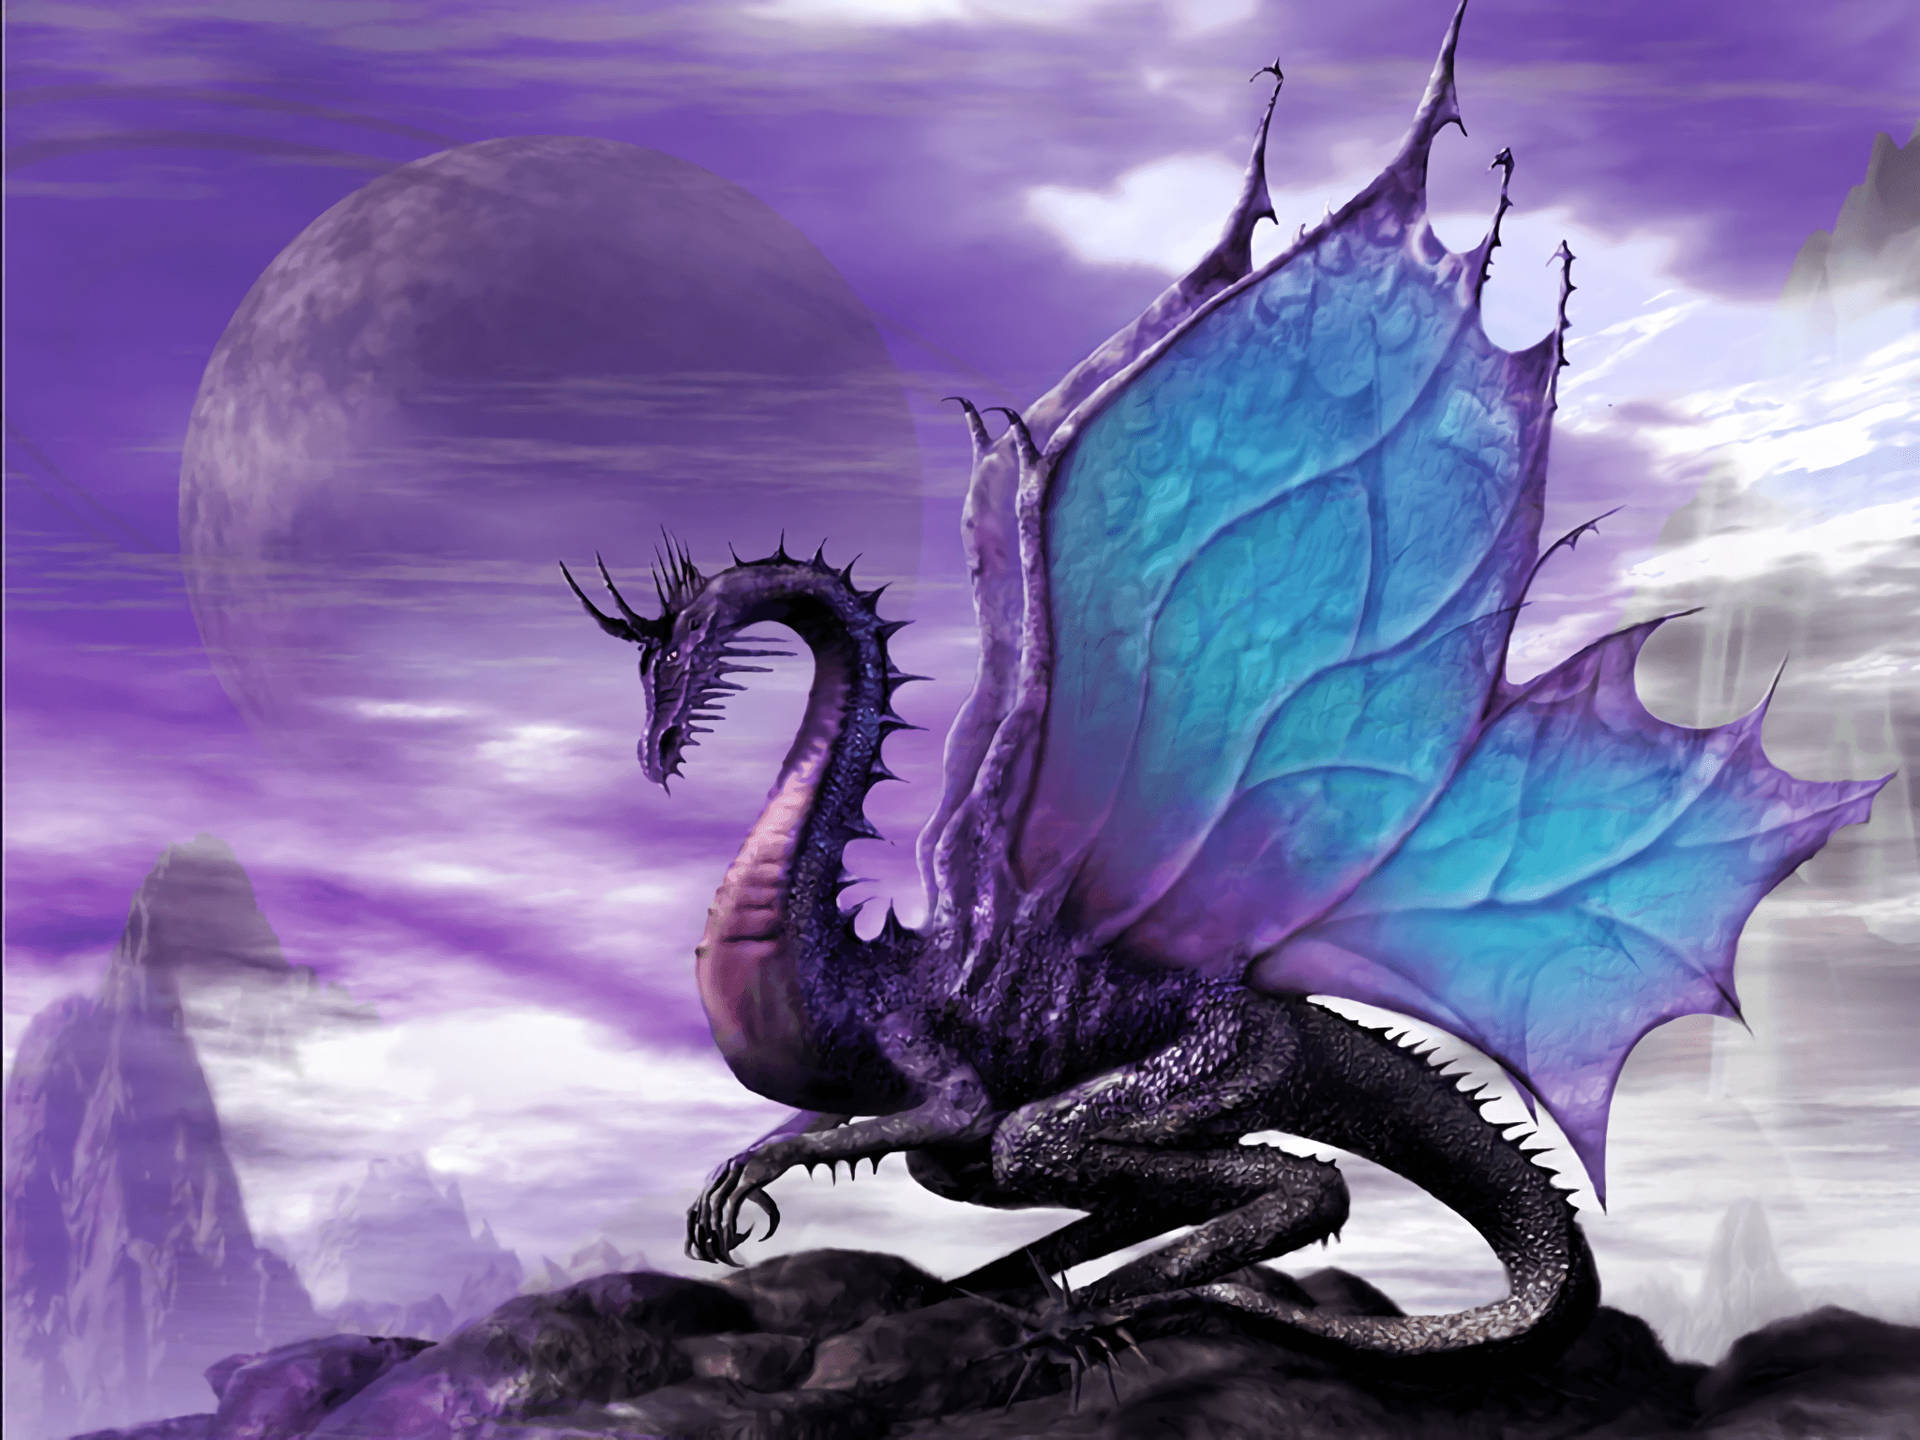 Coolest Dragon Against Purple Sky Wallpaper